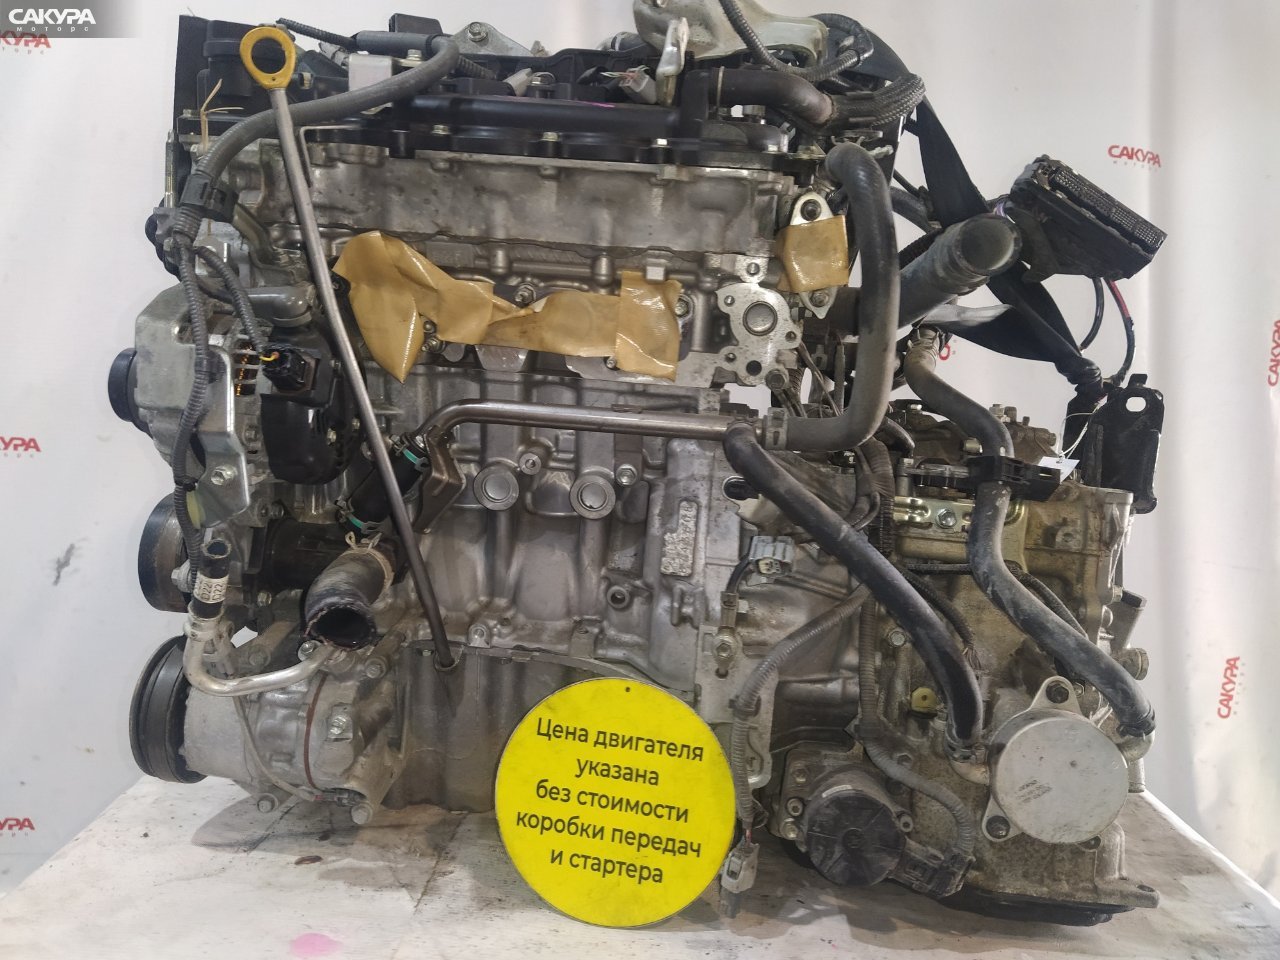 Двигатель Toyota Sienta NSP170G 2NR-FKE: купить в Сакура Красноярск.